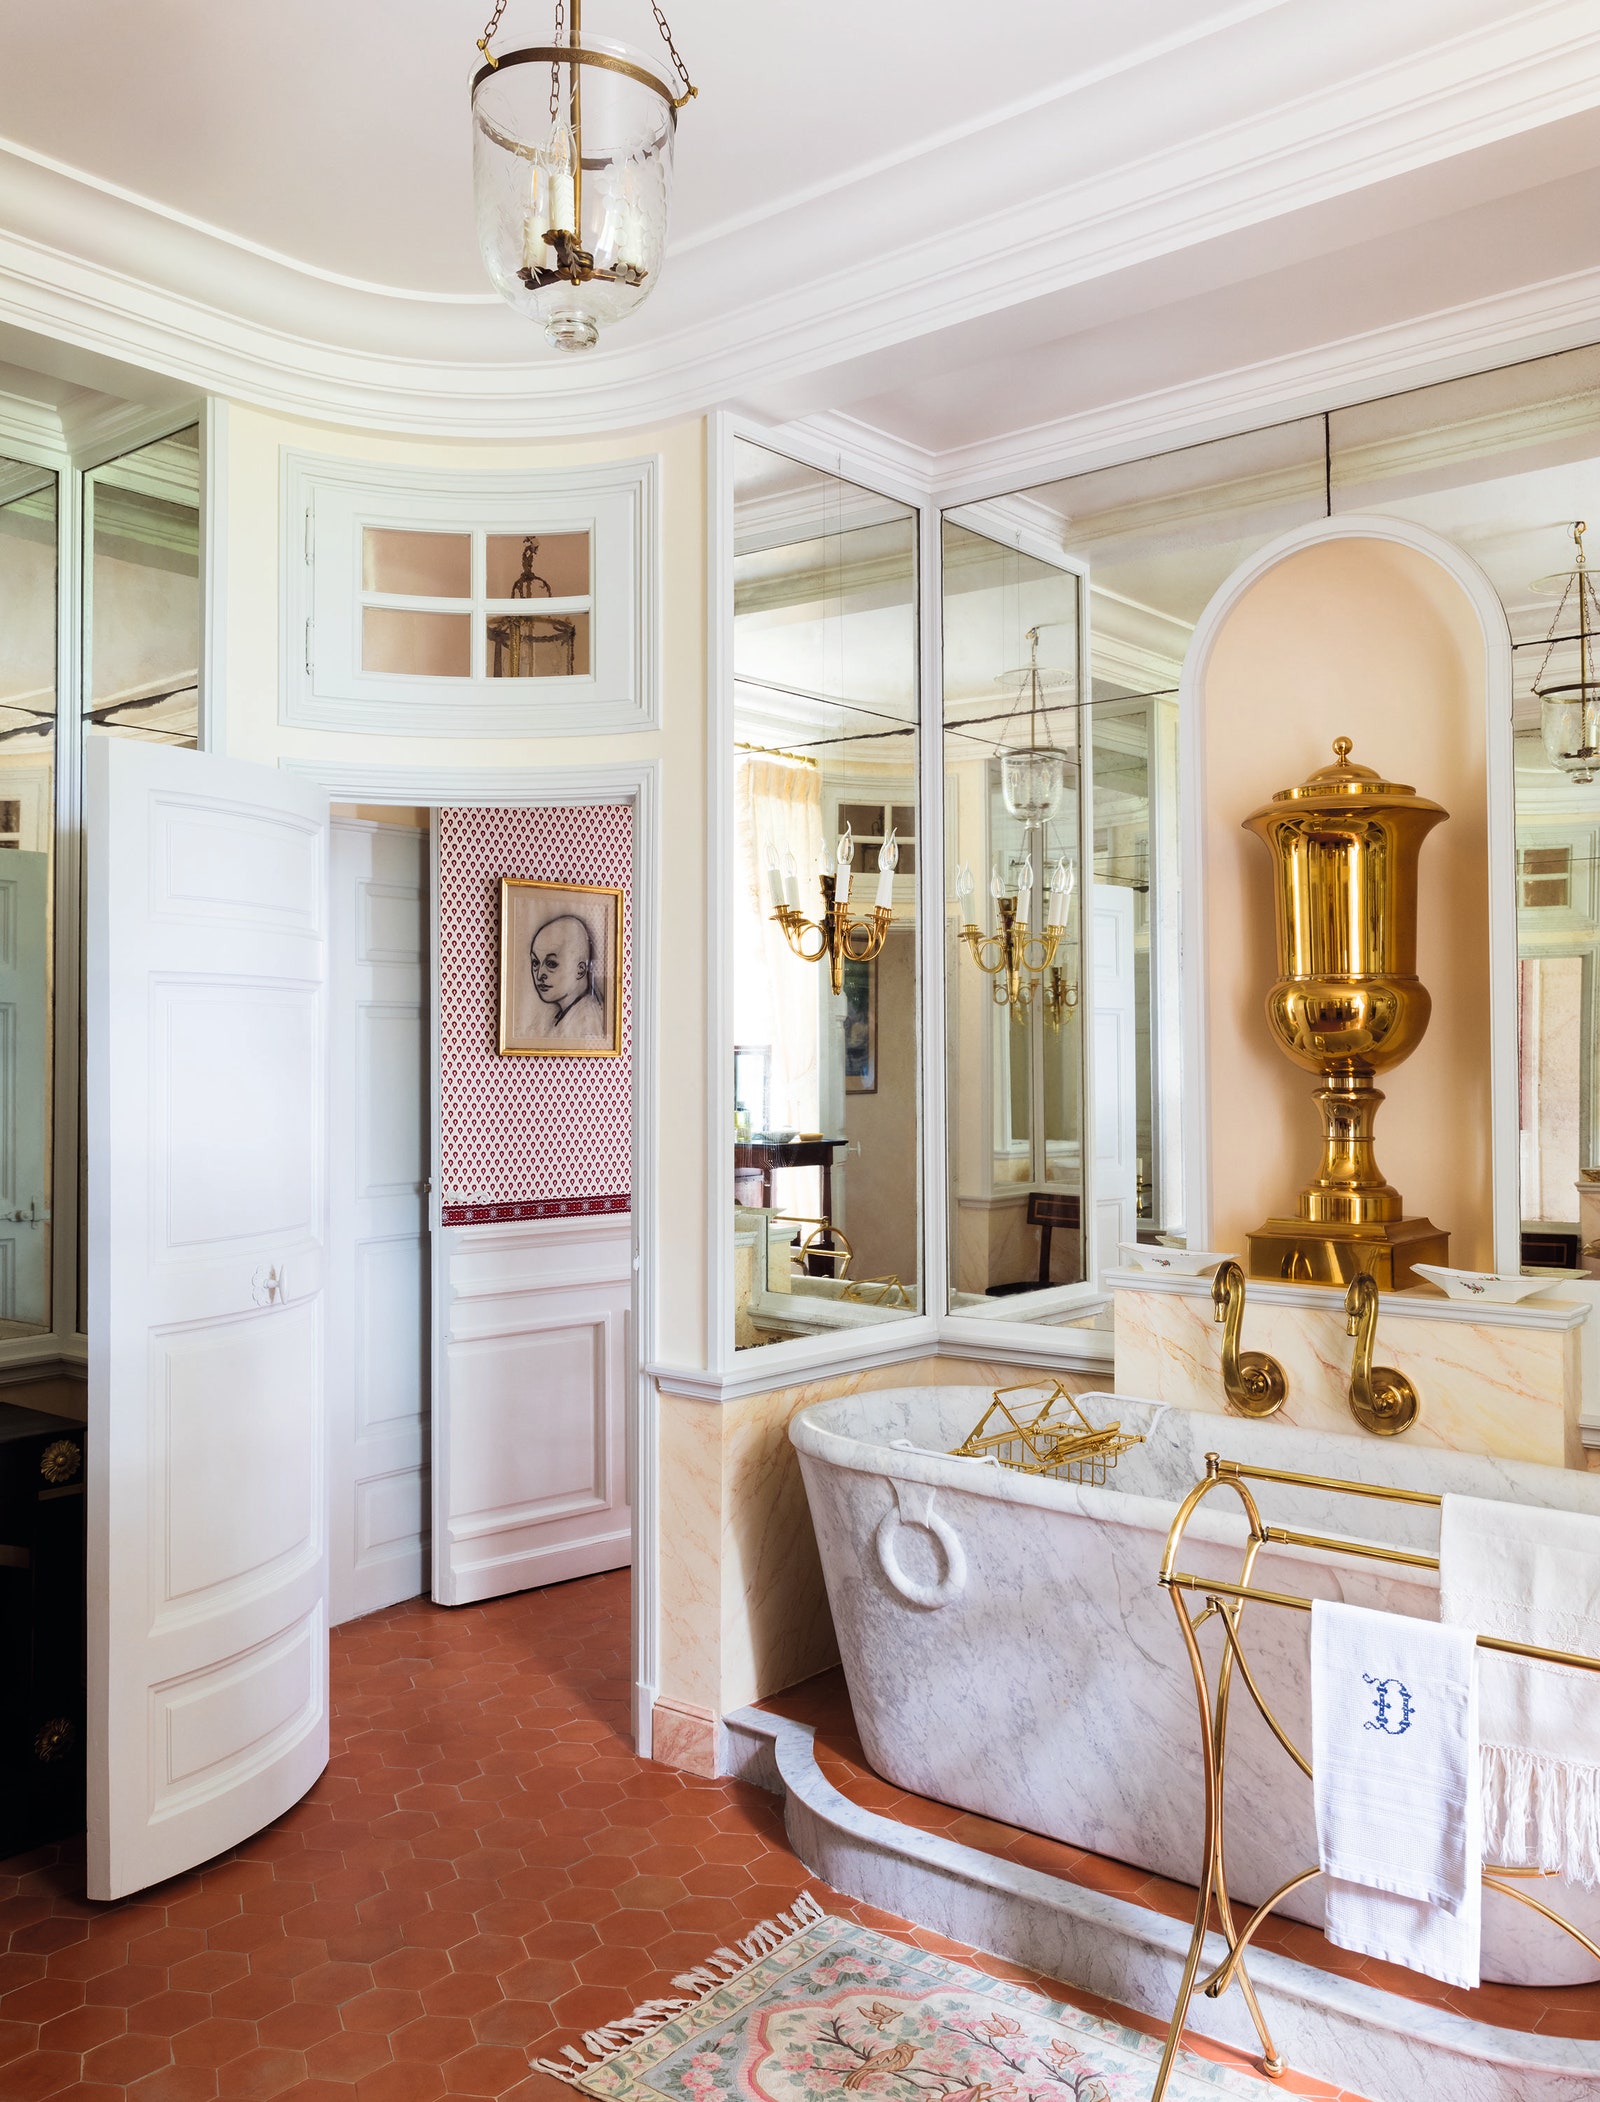 Ванная комната вдохновленная стилем Директории и ампиром. Сама ванна выполнена из белого мрамора и дополнена кранами в...